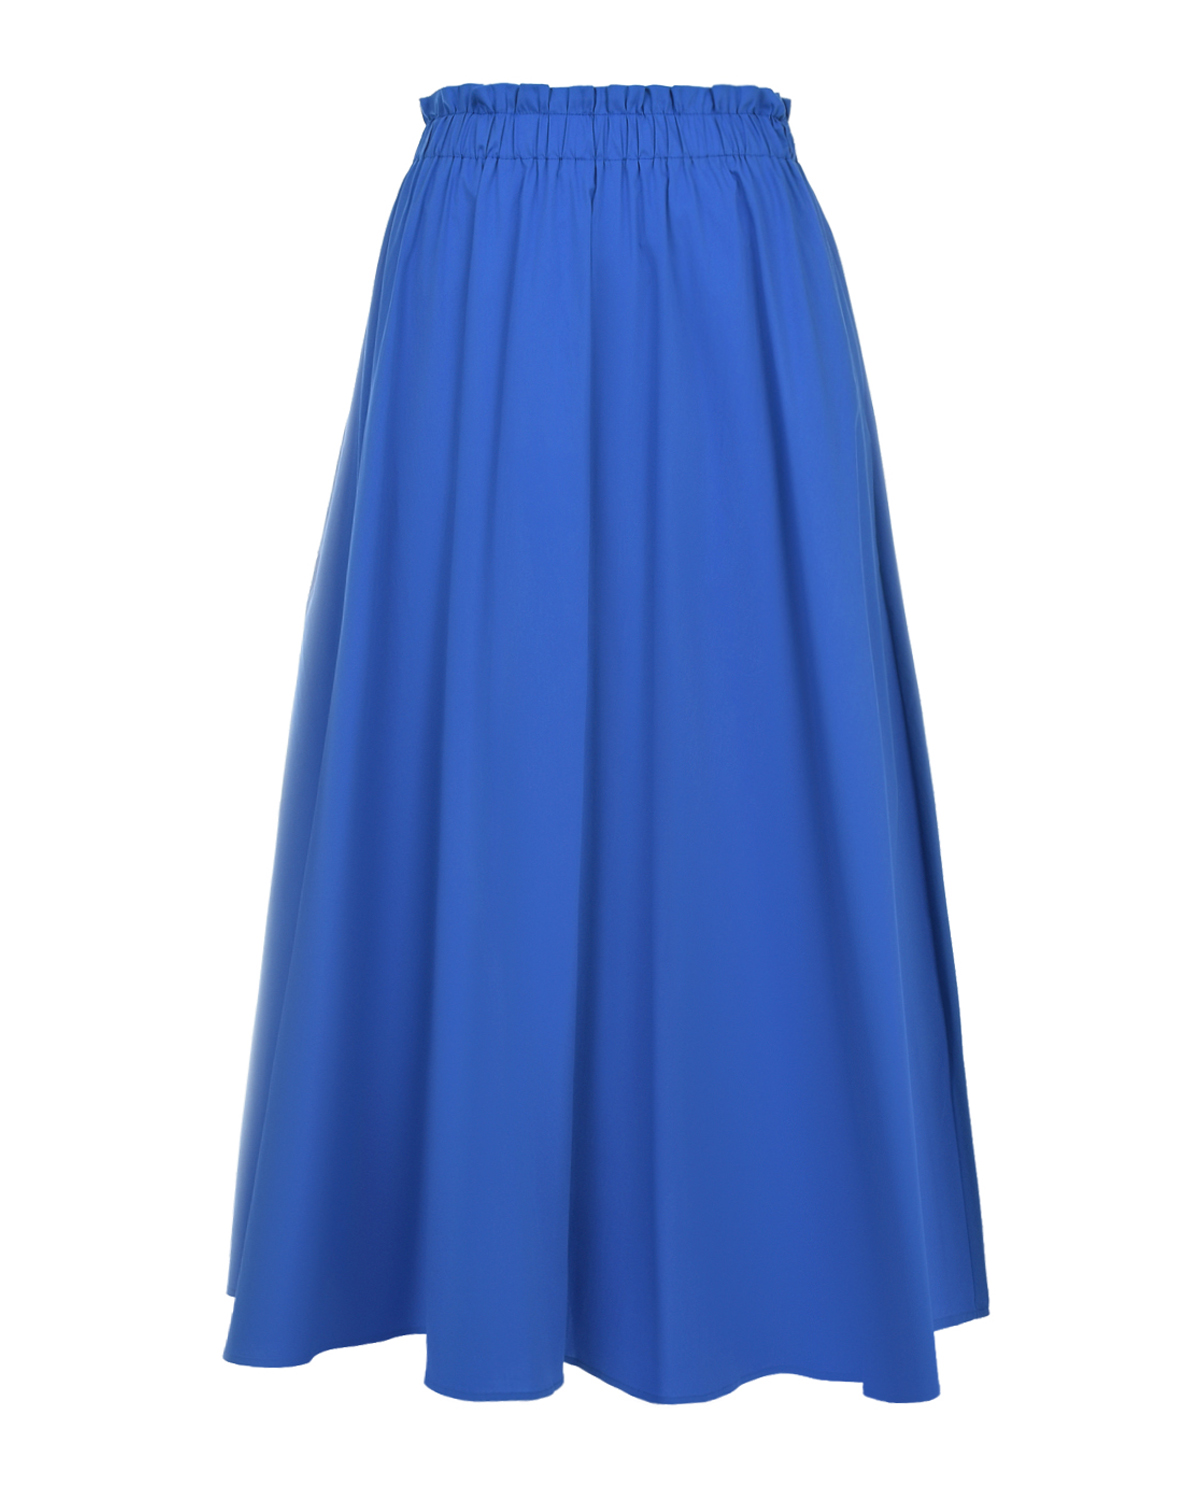 Синяя юбка с поясом на резинке Pietro Brunelli тёмно синяя юбка шорты для девочки 12 13л 158 40